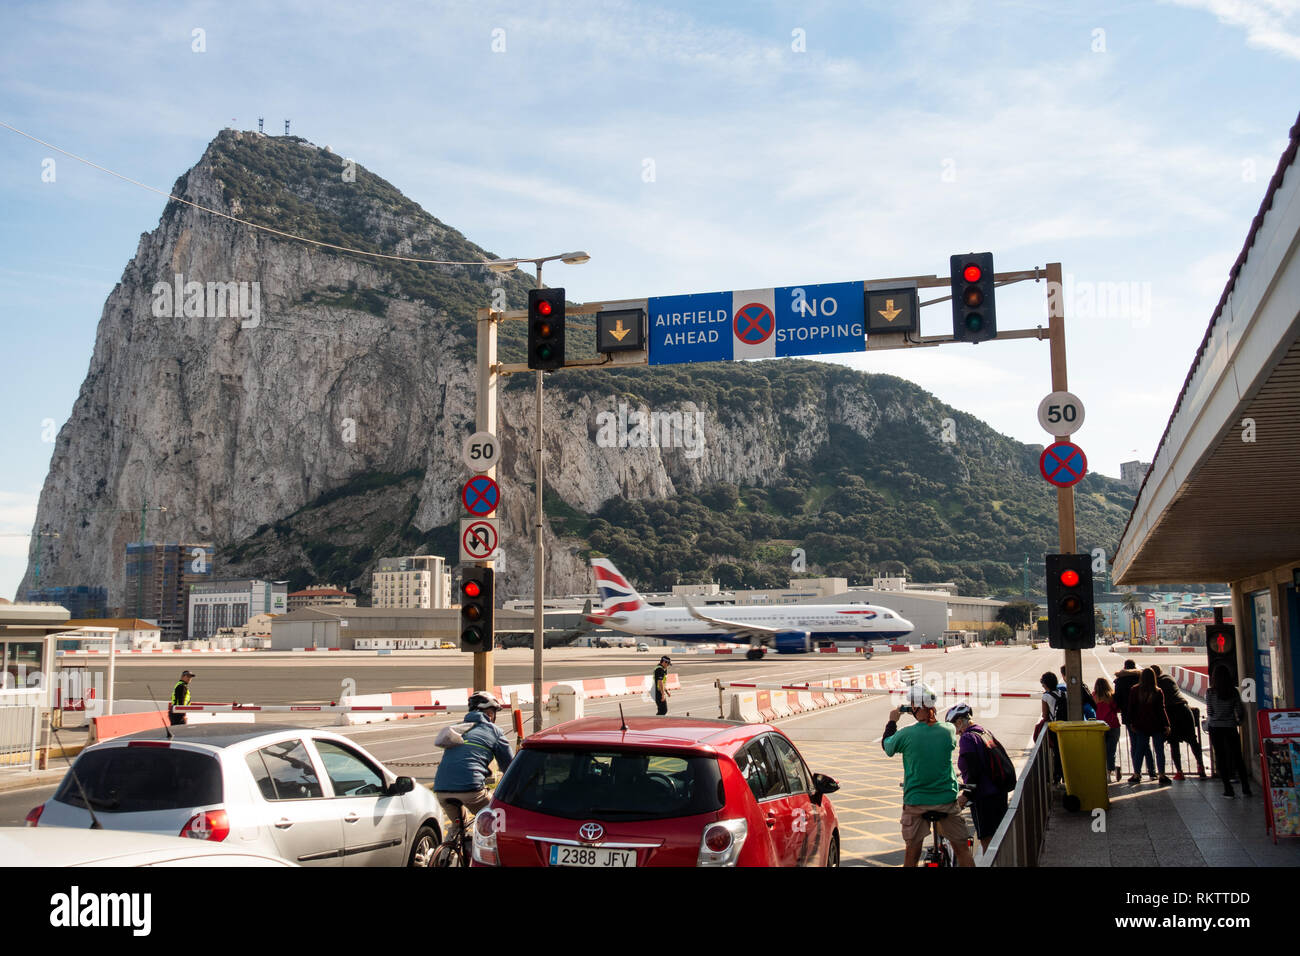 Ein Flugzeug des British Airways Airbus A320 startet auf der Straße, während der Verkehr und Fußgänger auf der berühmten Pistenüberquerung am Flughafen Gibraltar warten Stockfoto